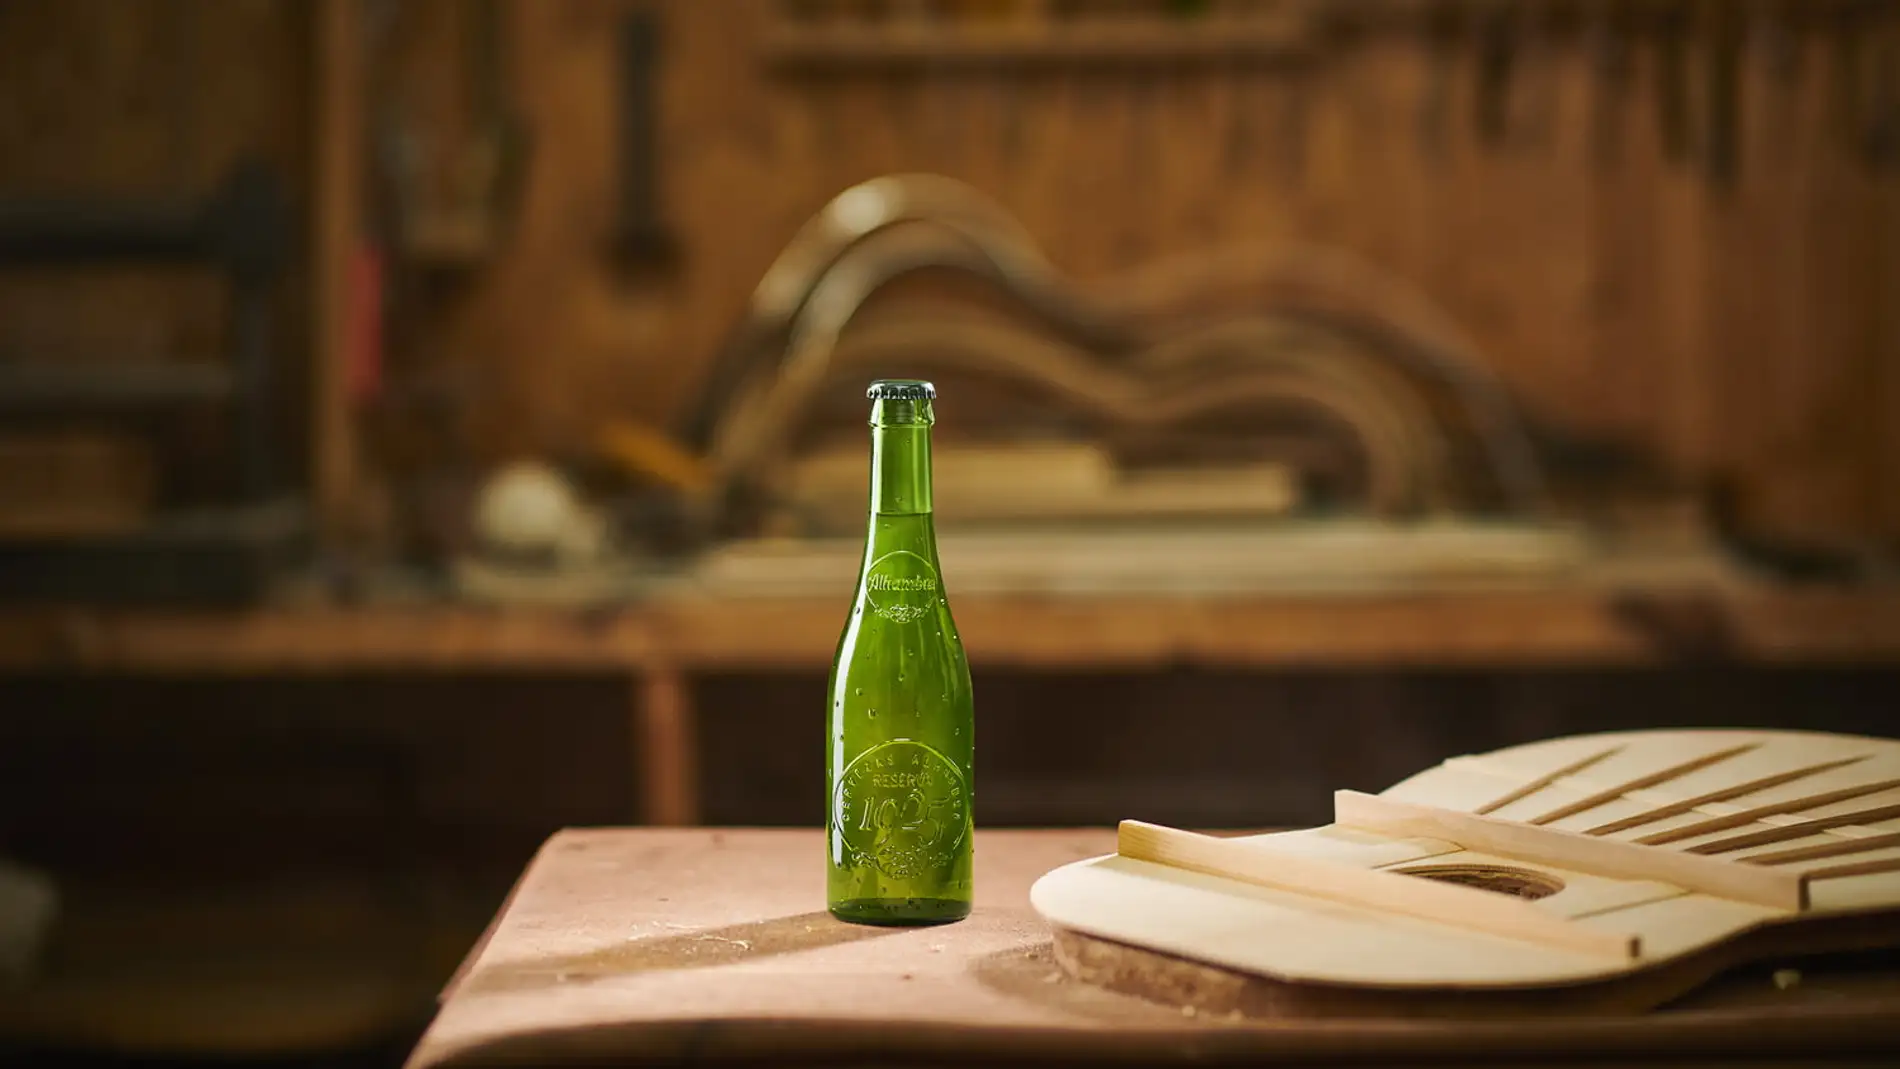 Cervezas Alhambra presenta en Granada la exposición 'Hallazgos: Presente y futuro'